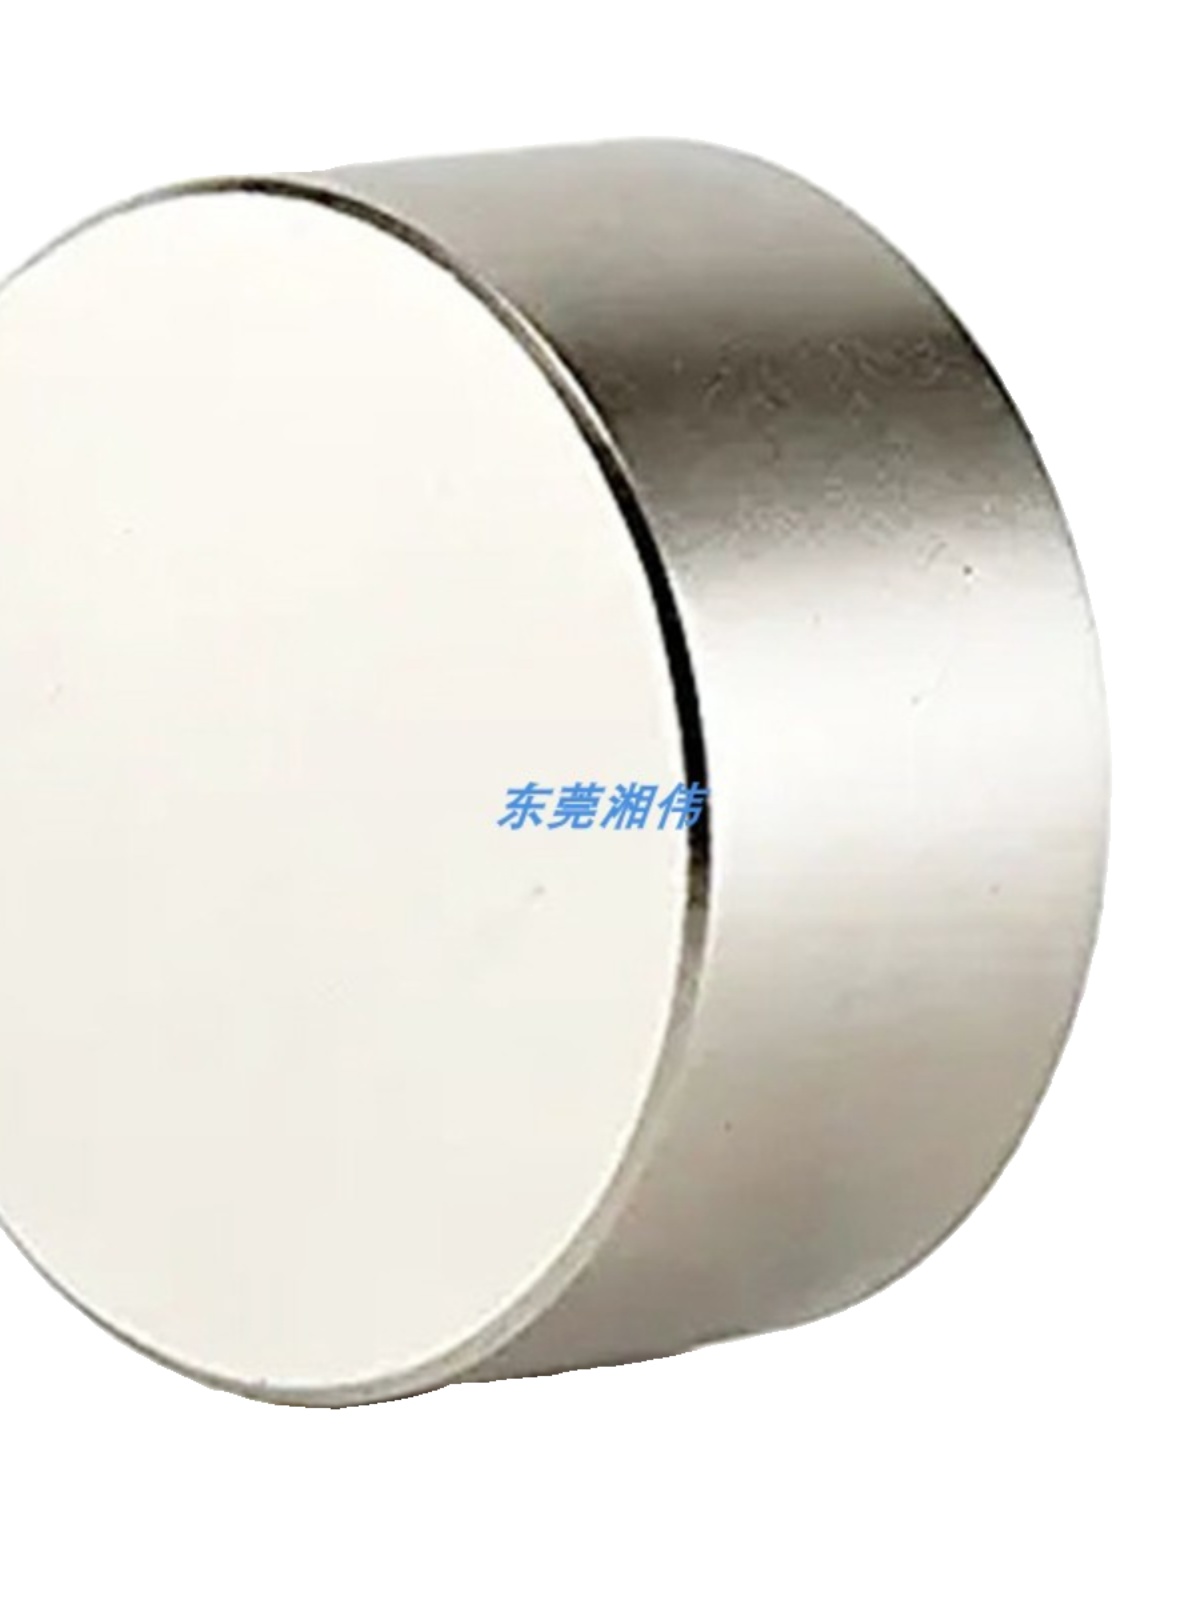 大尺寸强力磁铁圆形D70/80/90/100大号高强度钕铁硼吸铁石强磁磁